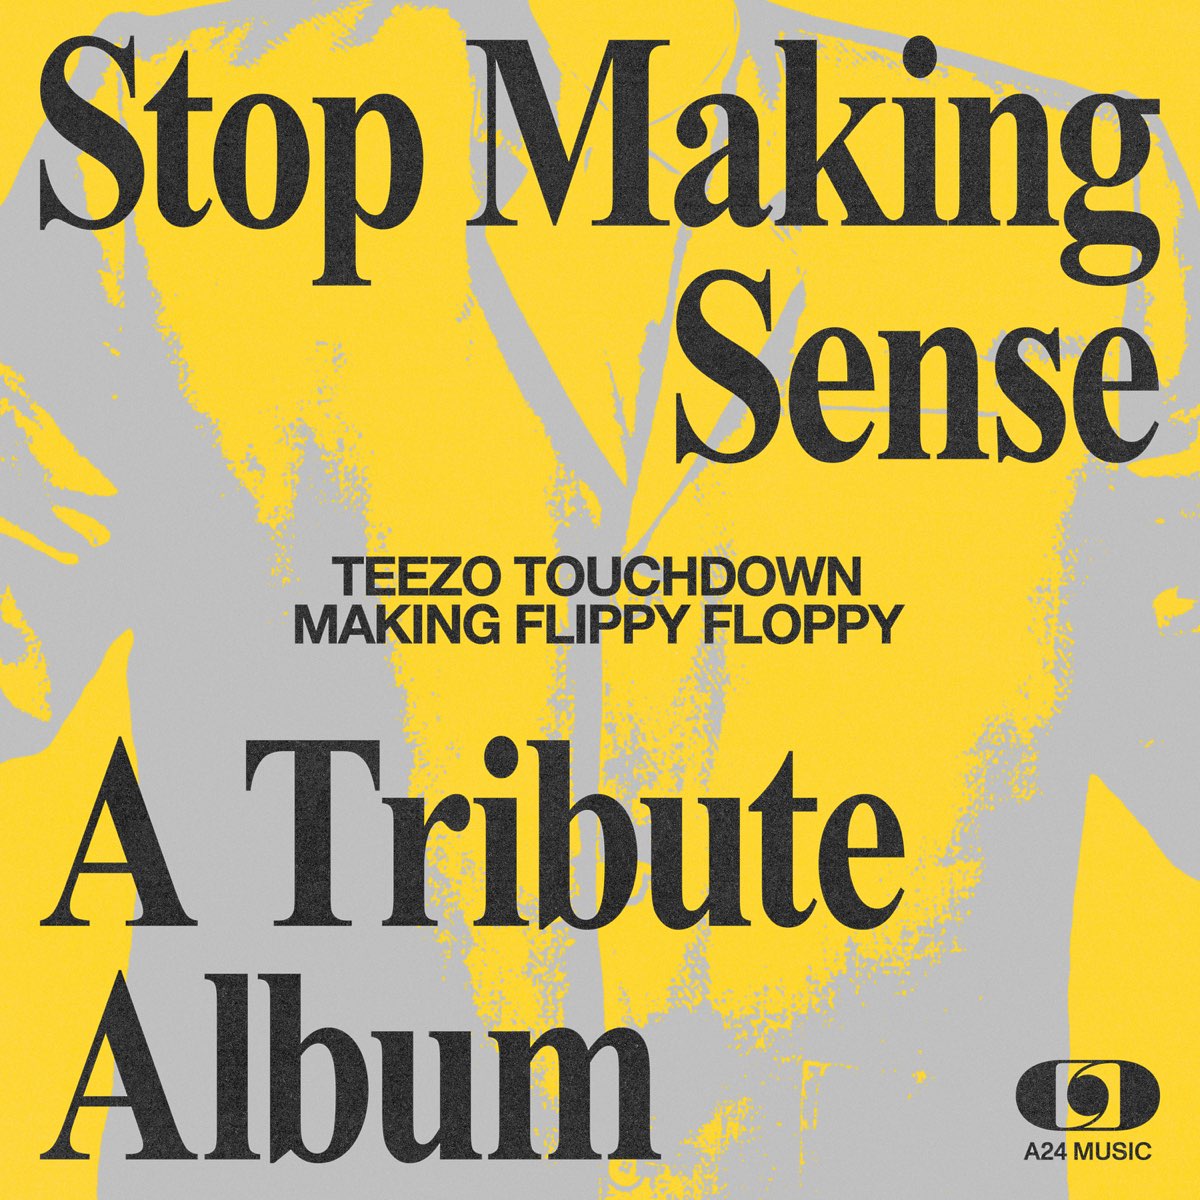 Teezo Touchdown Making Flippy Floppy cover artwork